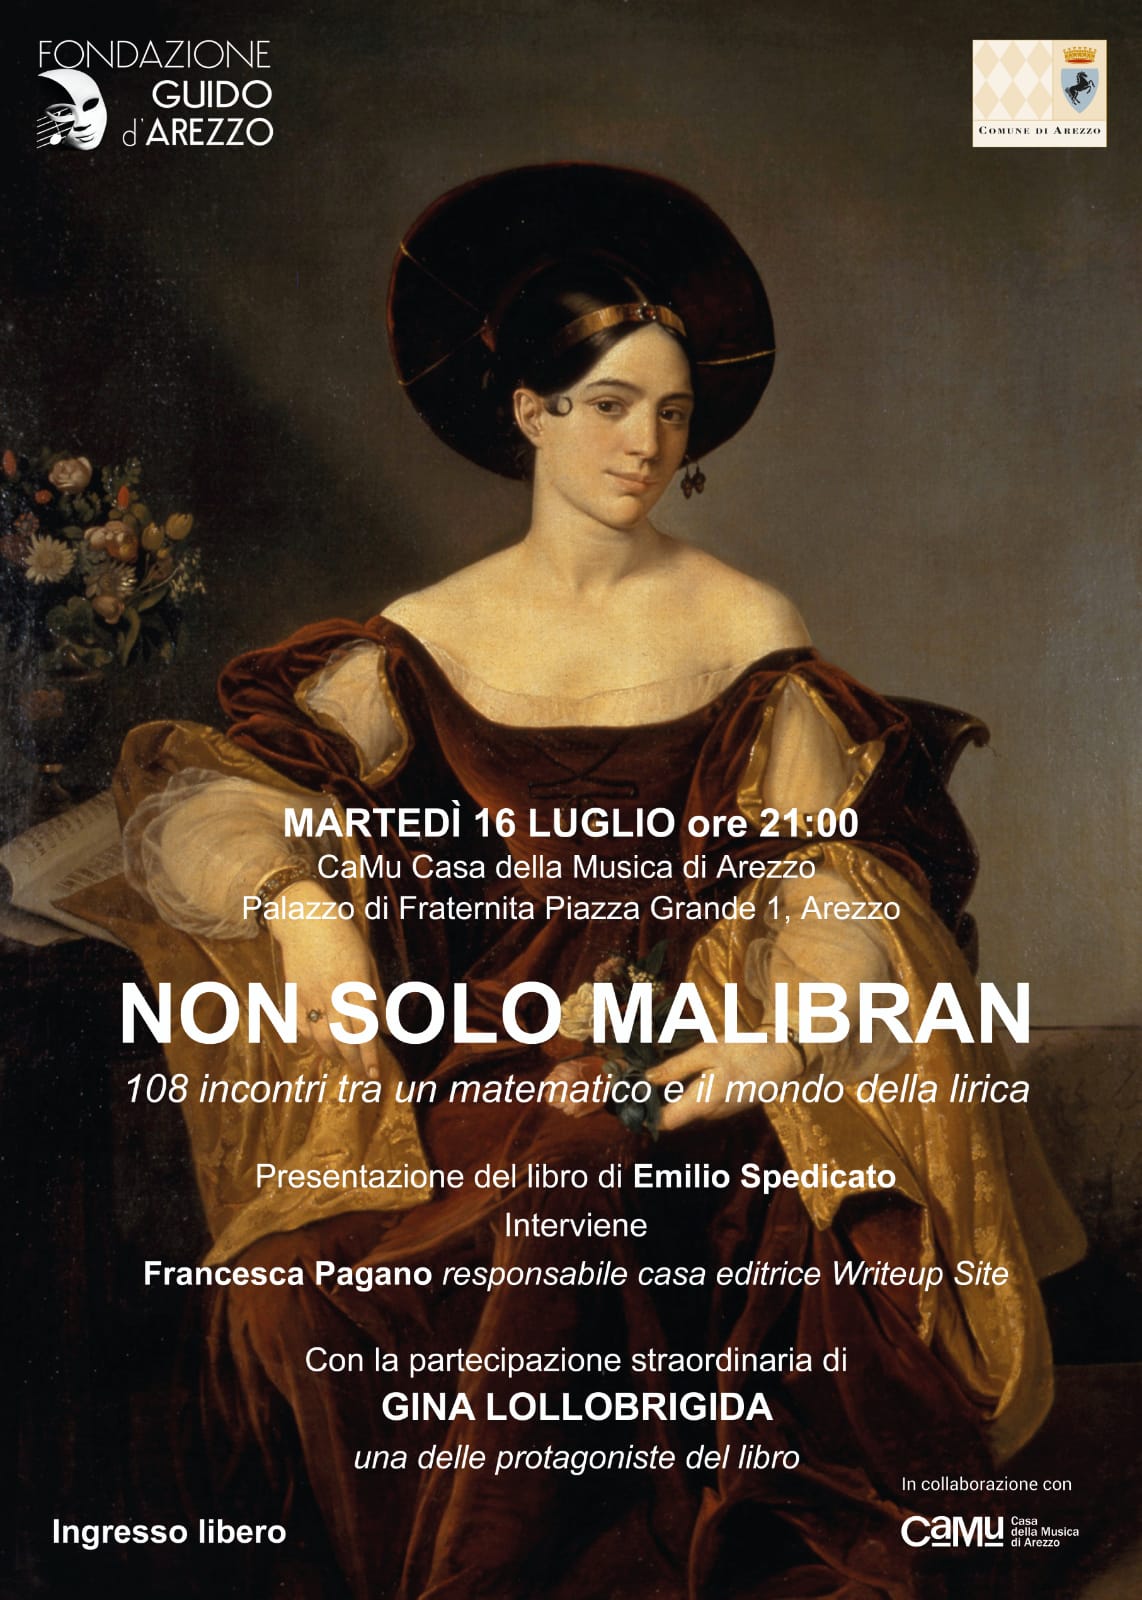 Gina Lollobrigida protagonista ad Arezzo di una serata dedicata alla storia dell’opera